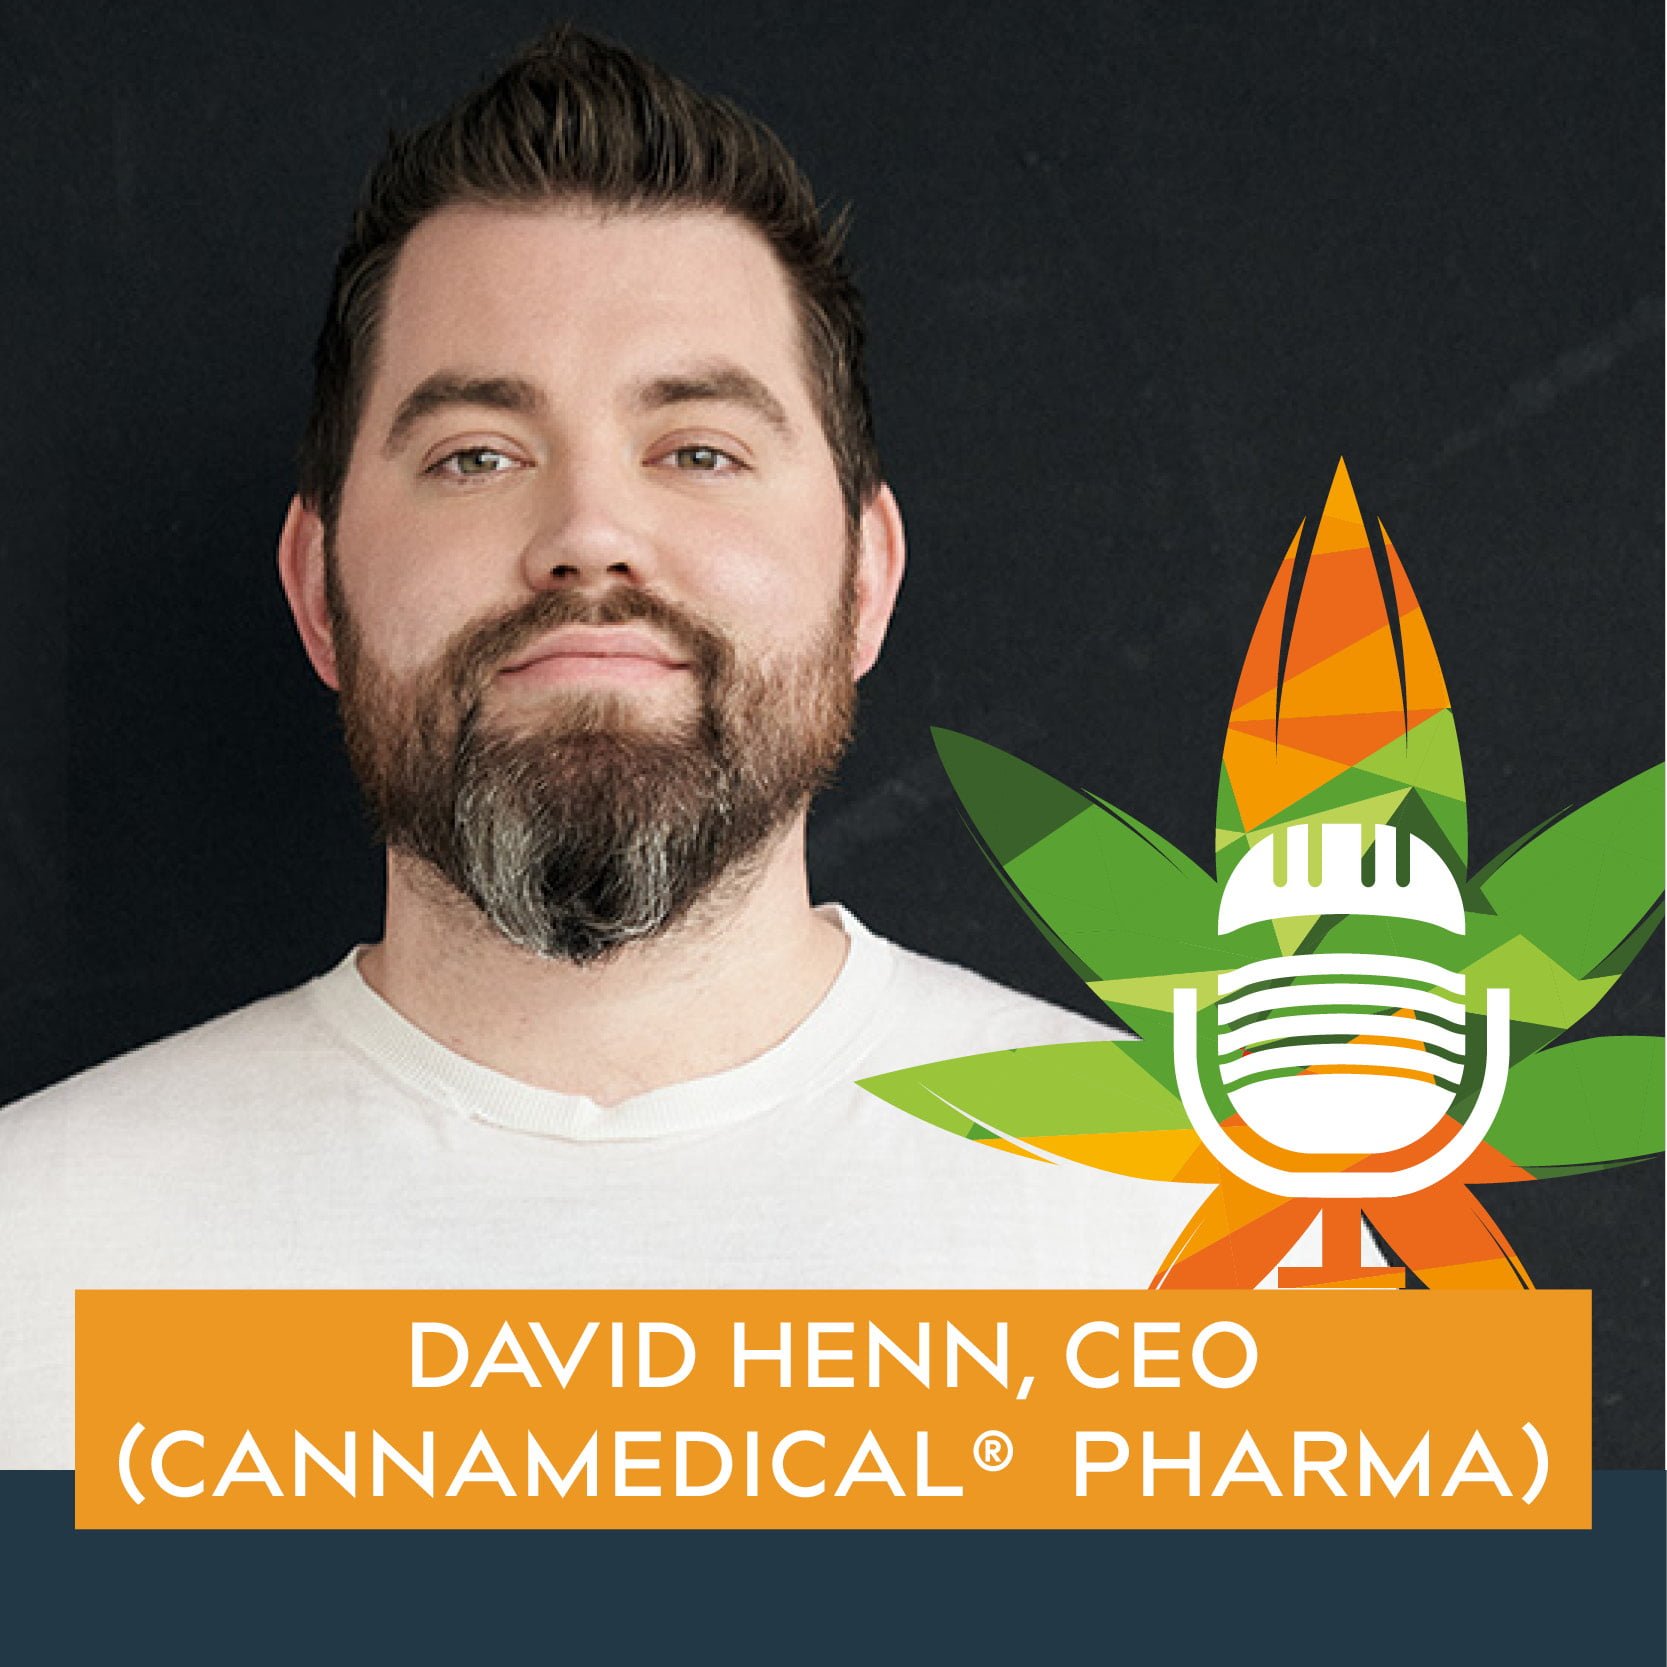 David Henn Cannamedical CM Pharma köln CEO lets let s talk about cannabis